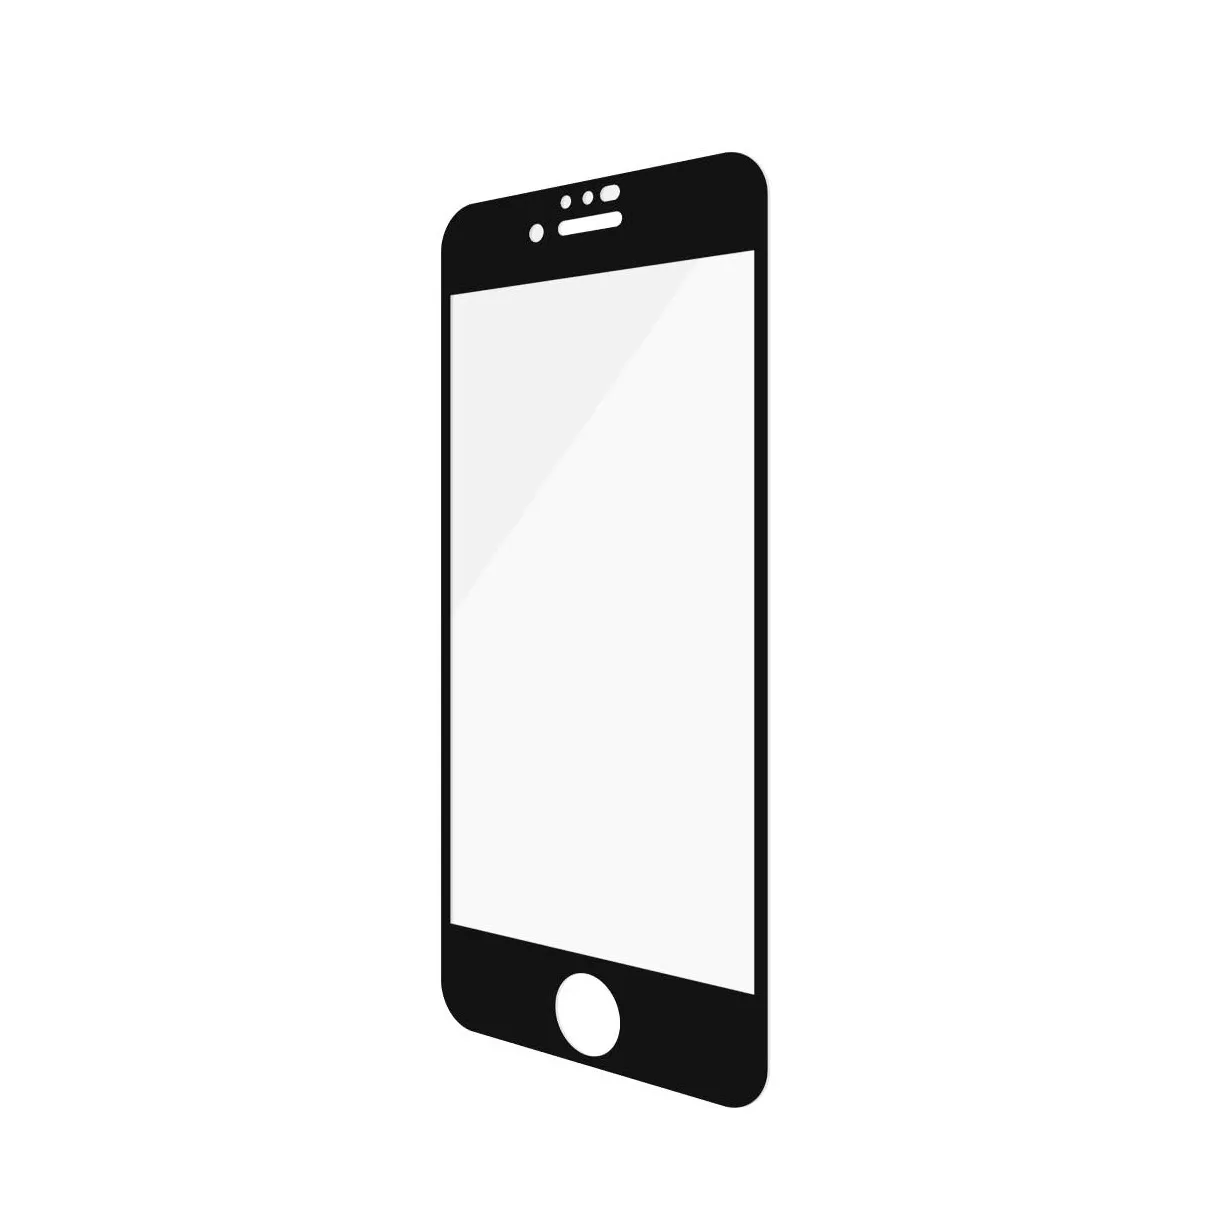 PanzerGlass Apple iPhone 6/6s/7/8/SE (2020) Case Friendly Zwart